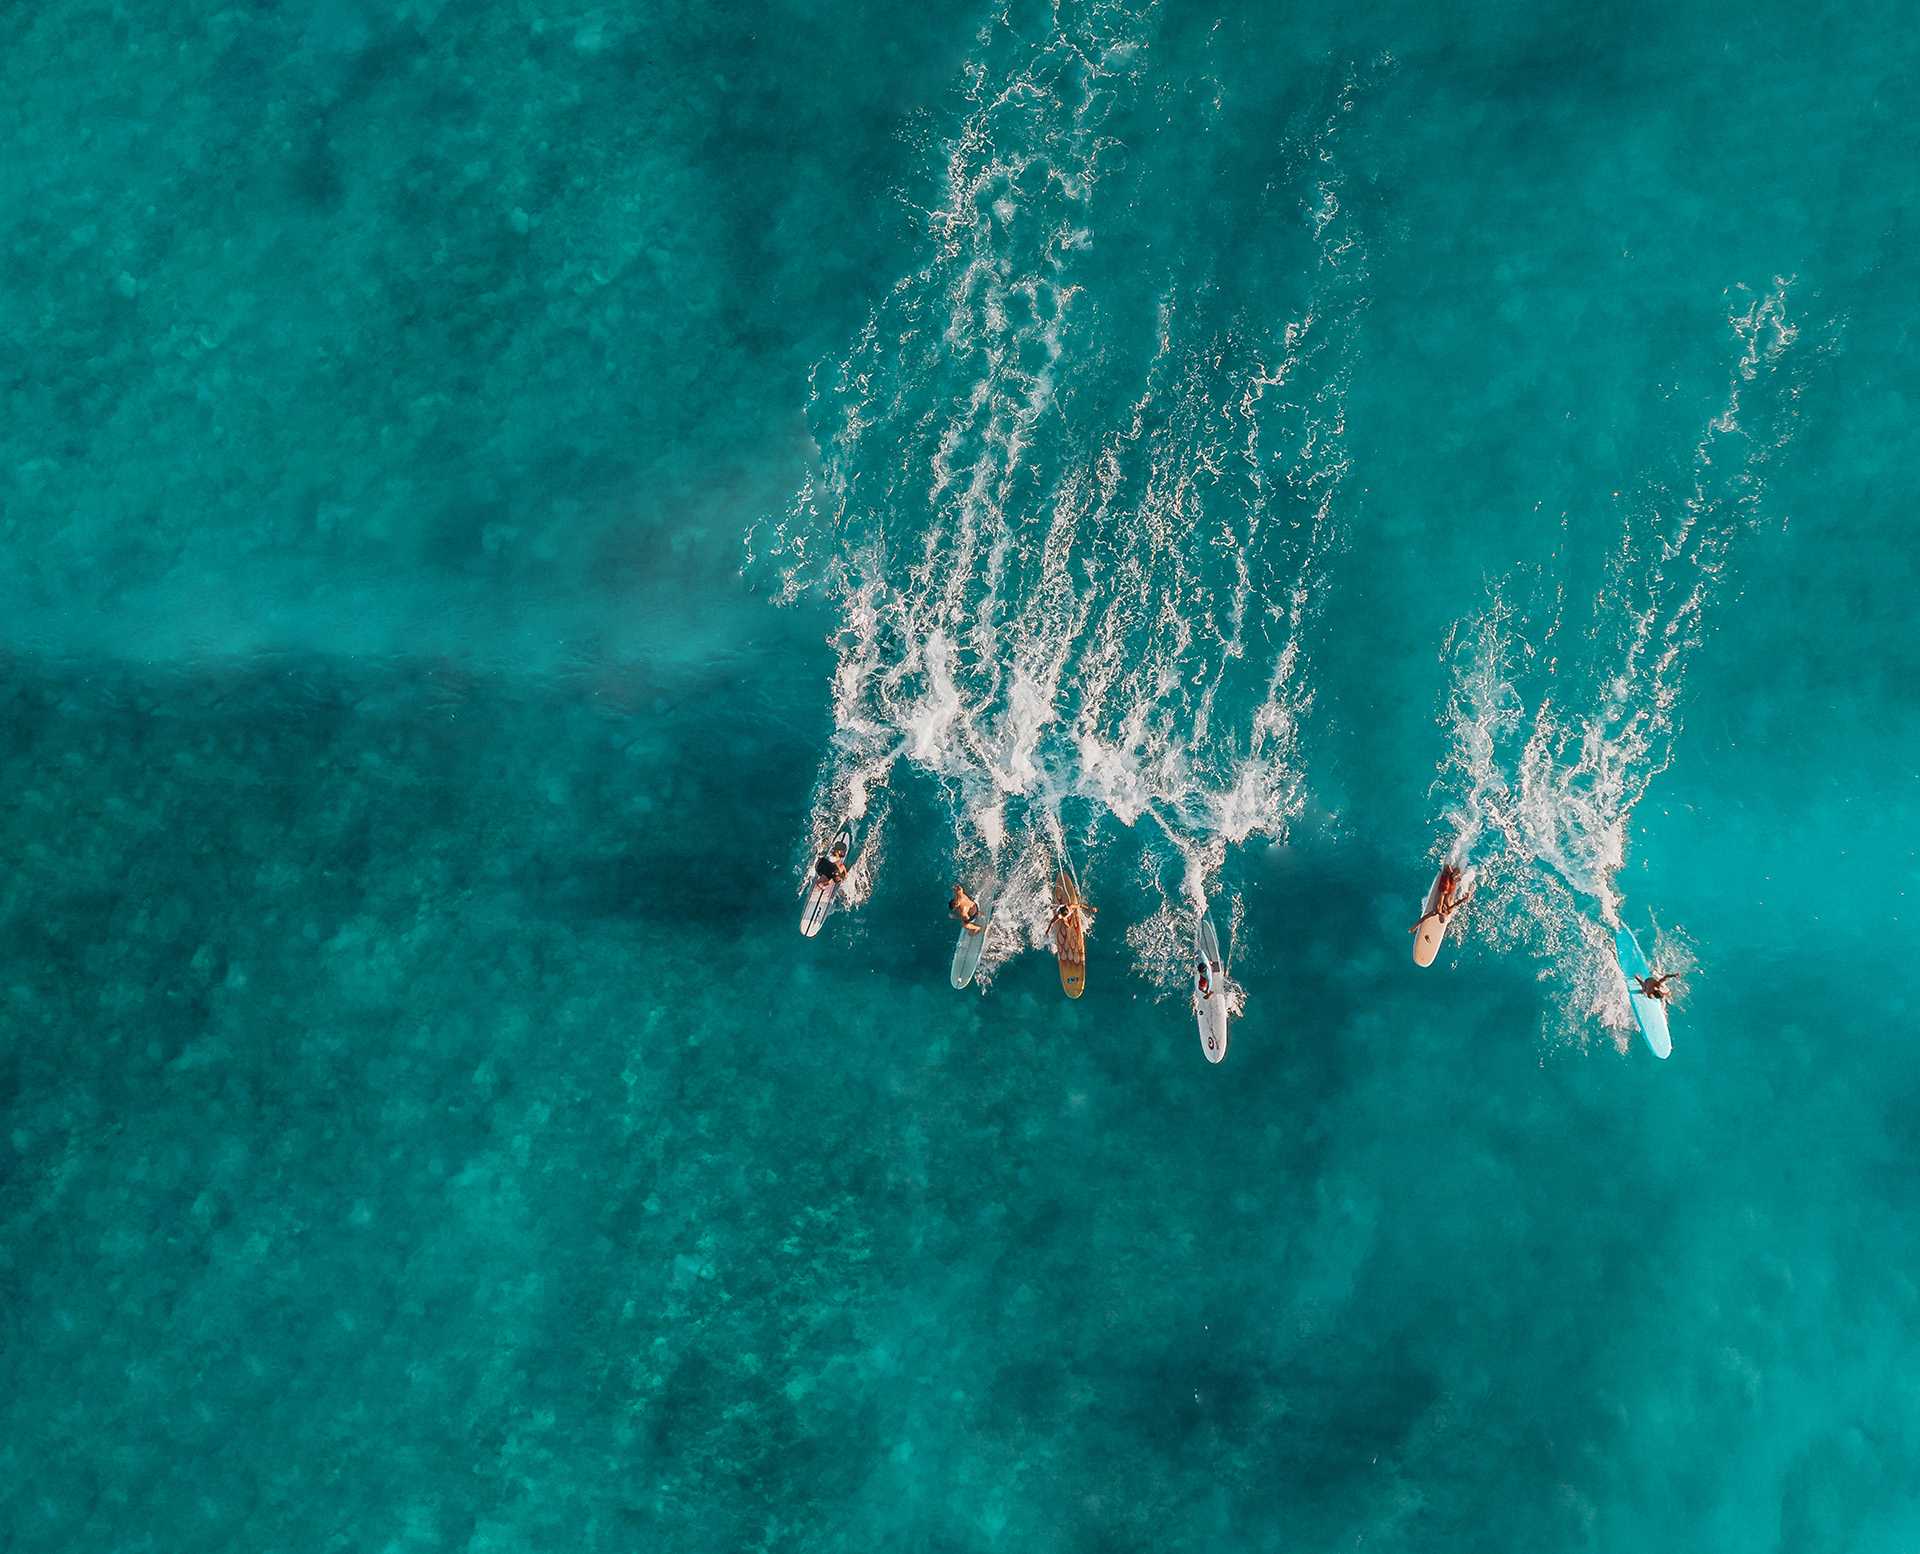 Team surfs together on a wave